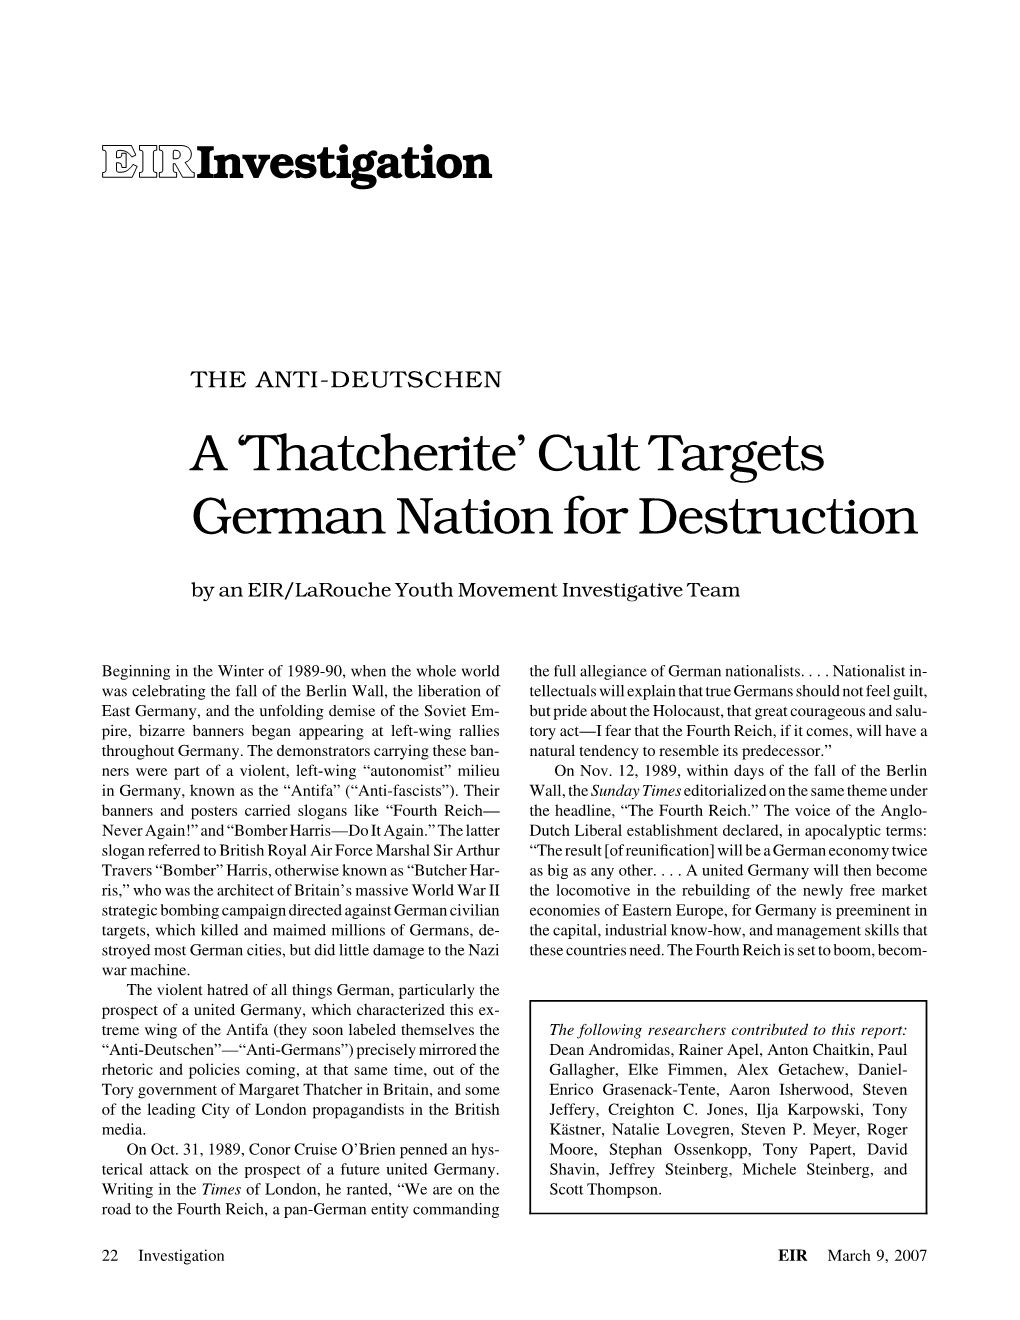 Cult Targets German Nation for Destruction